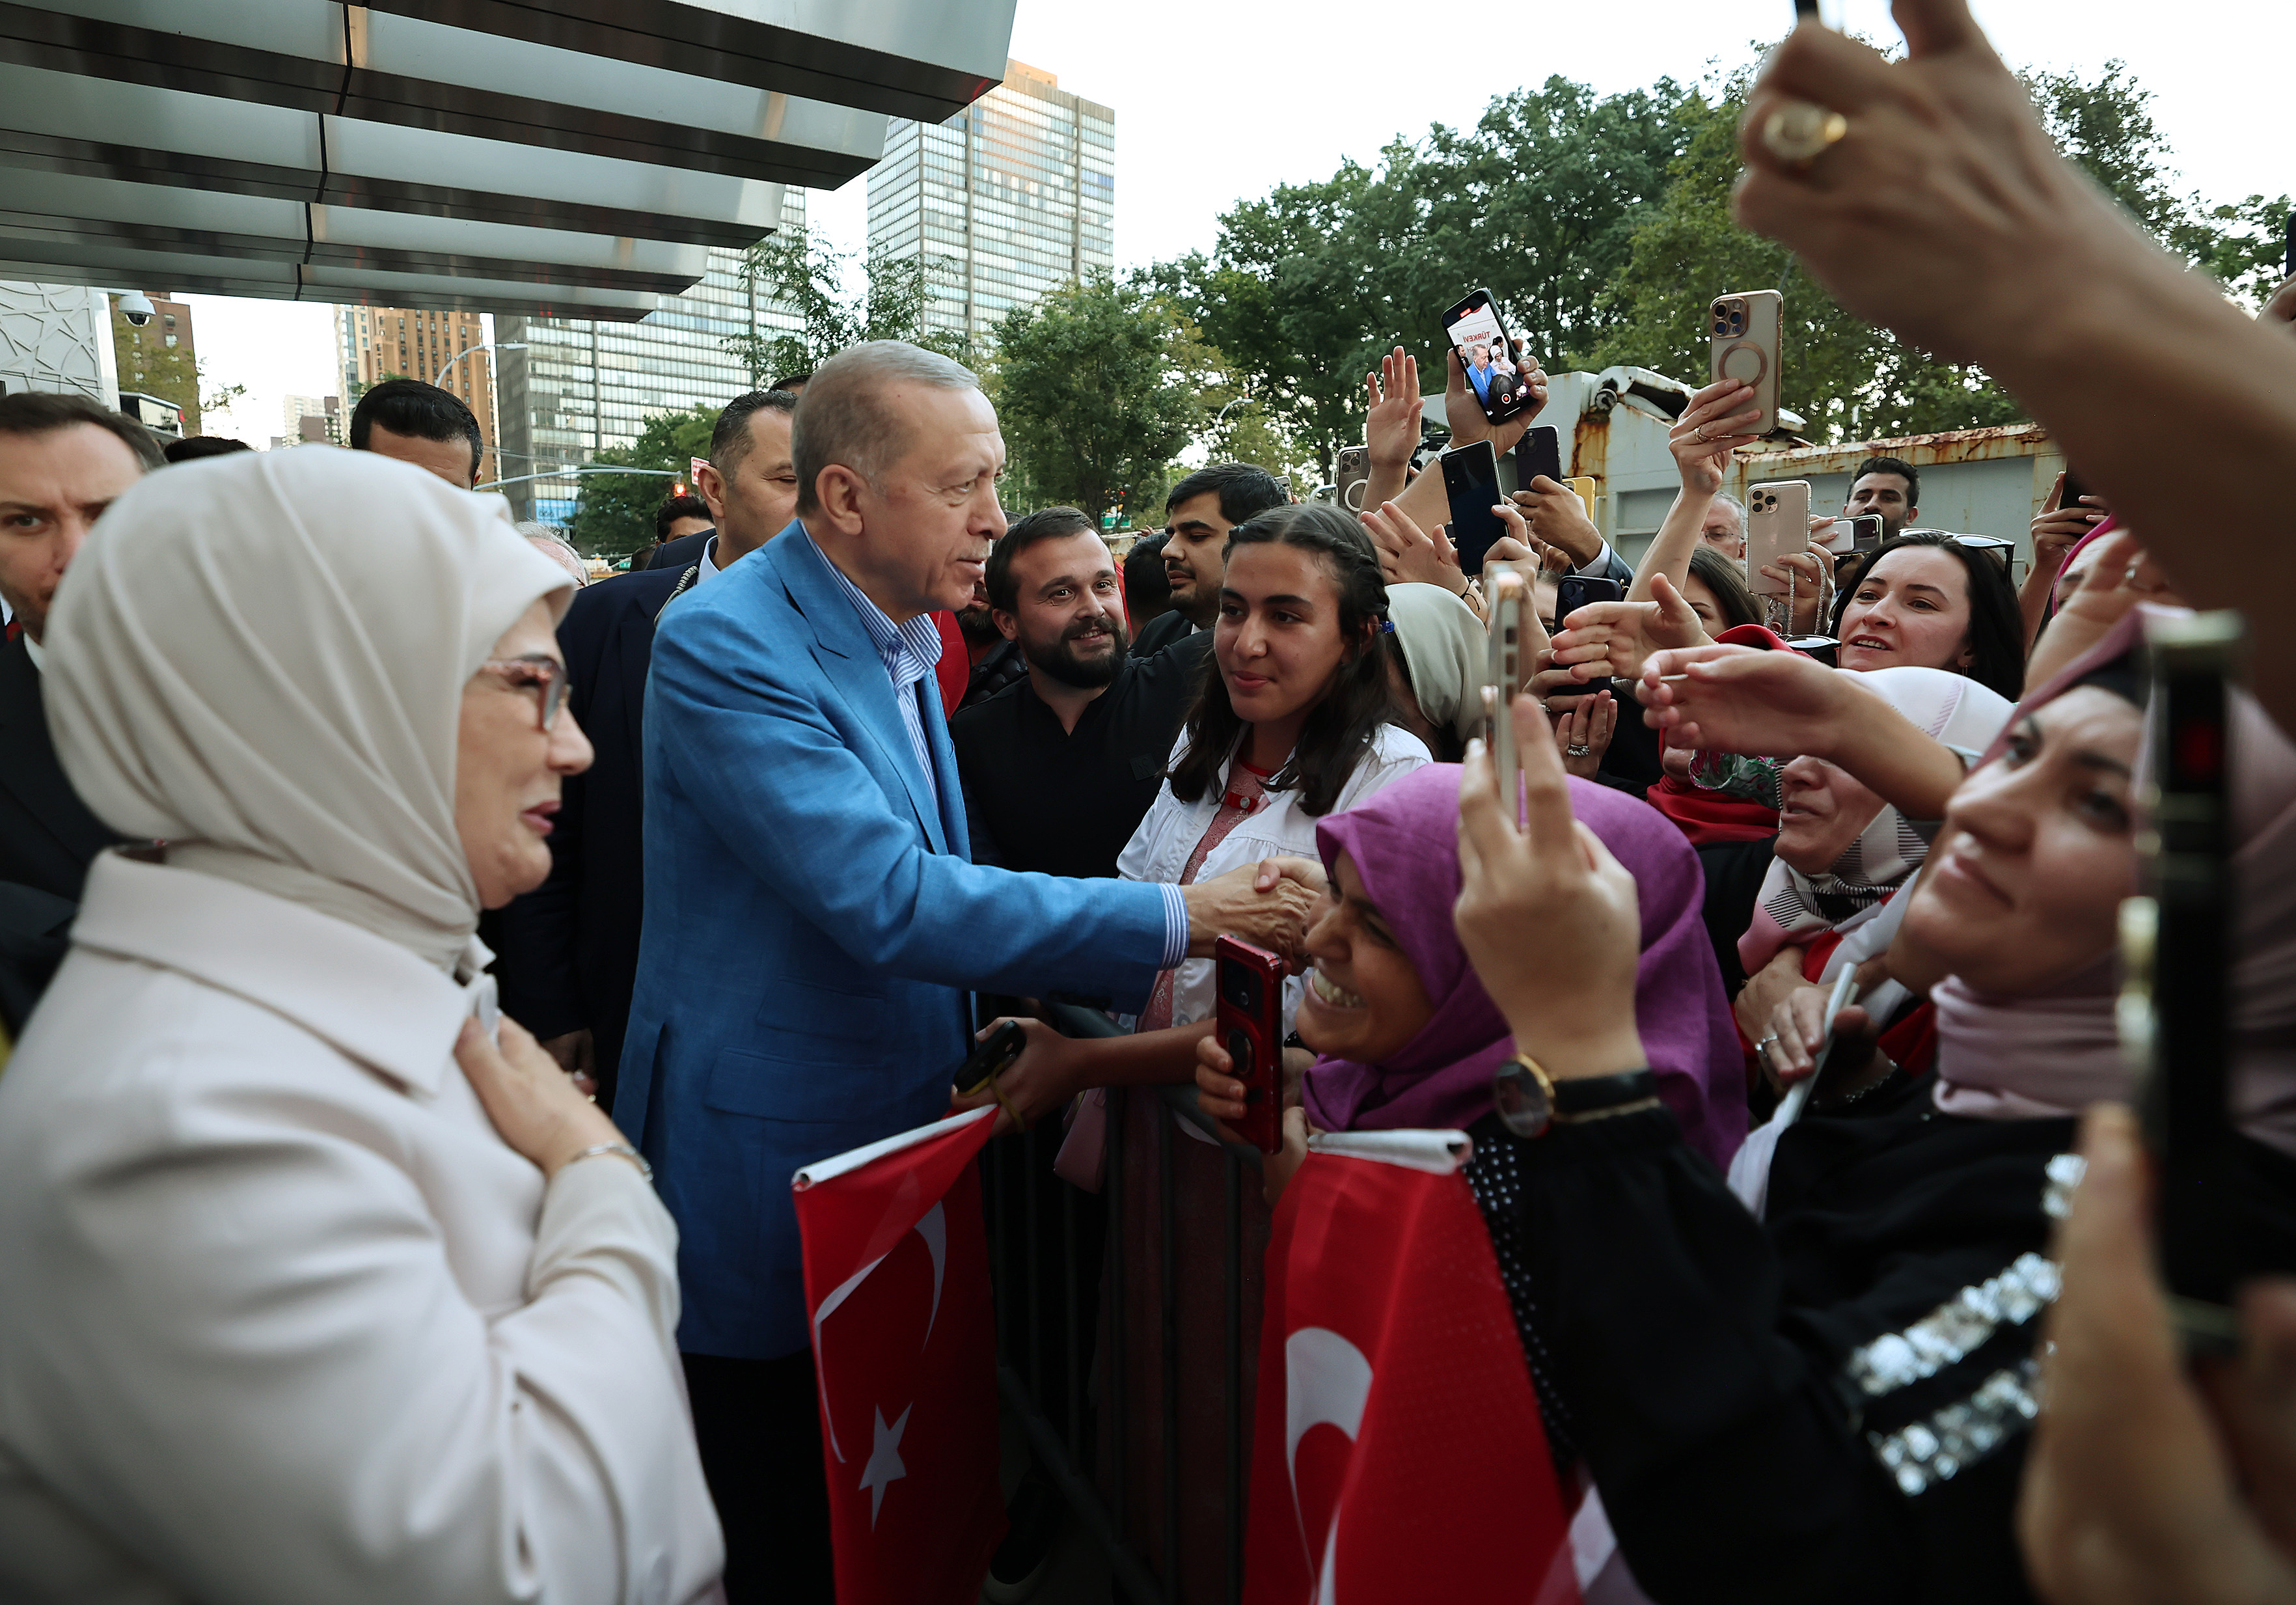 Cumhurbaşkanı Erdoğan, Türkevi Binası’nın önünde karşılandı